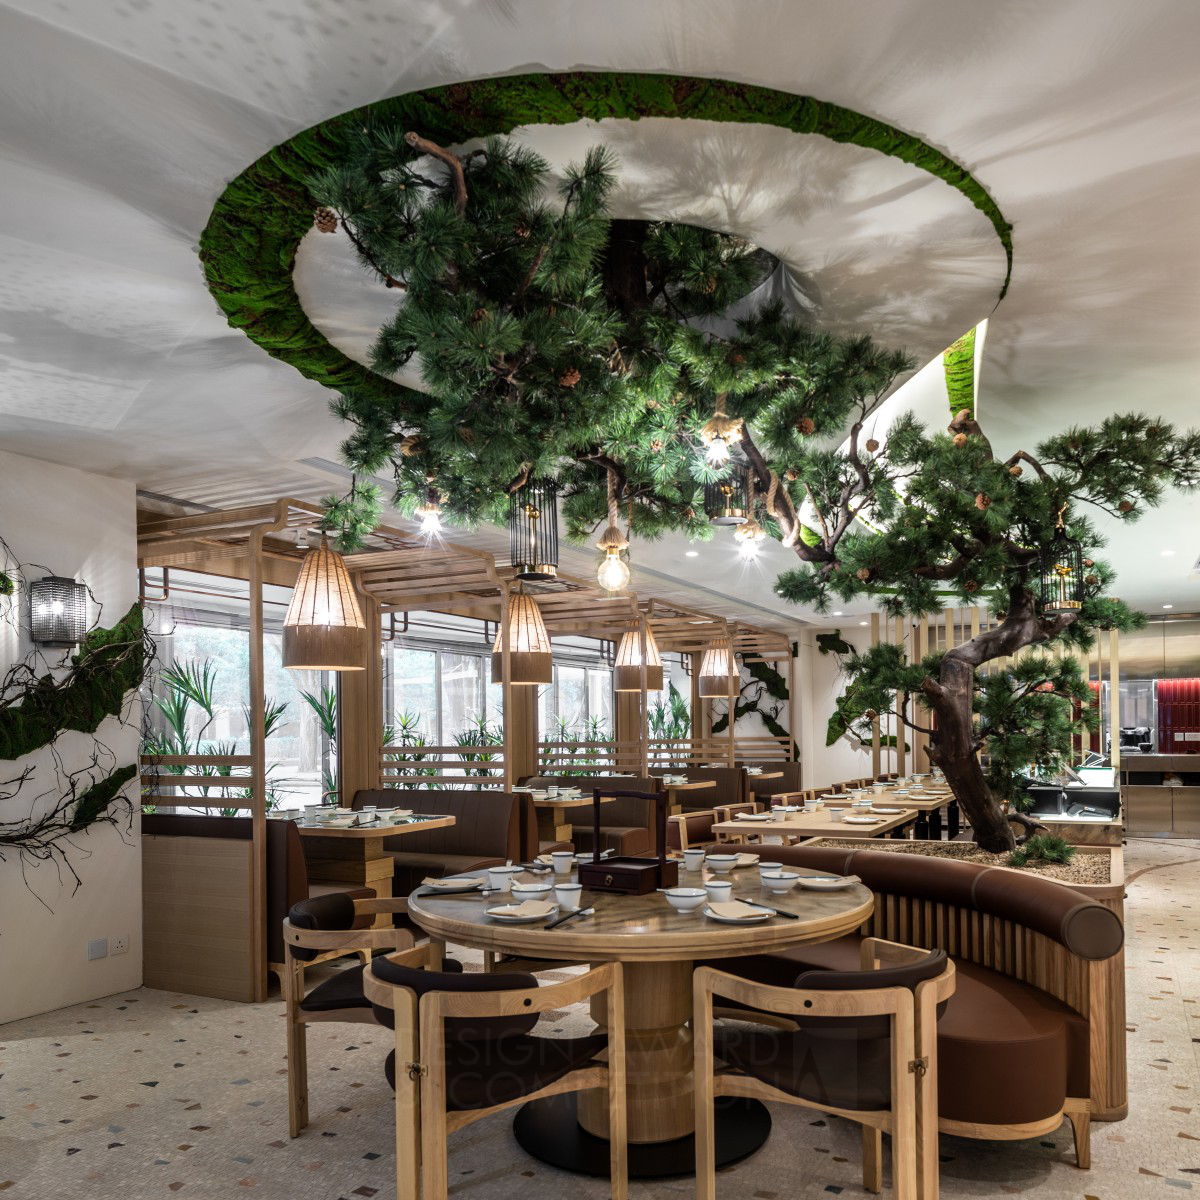 Dabpa-Shatin Restaurant by Minus Workshop Bronze Interior Space and Exhibition Design Award Winner 2021 